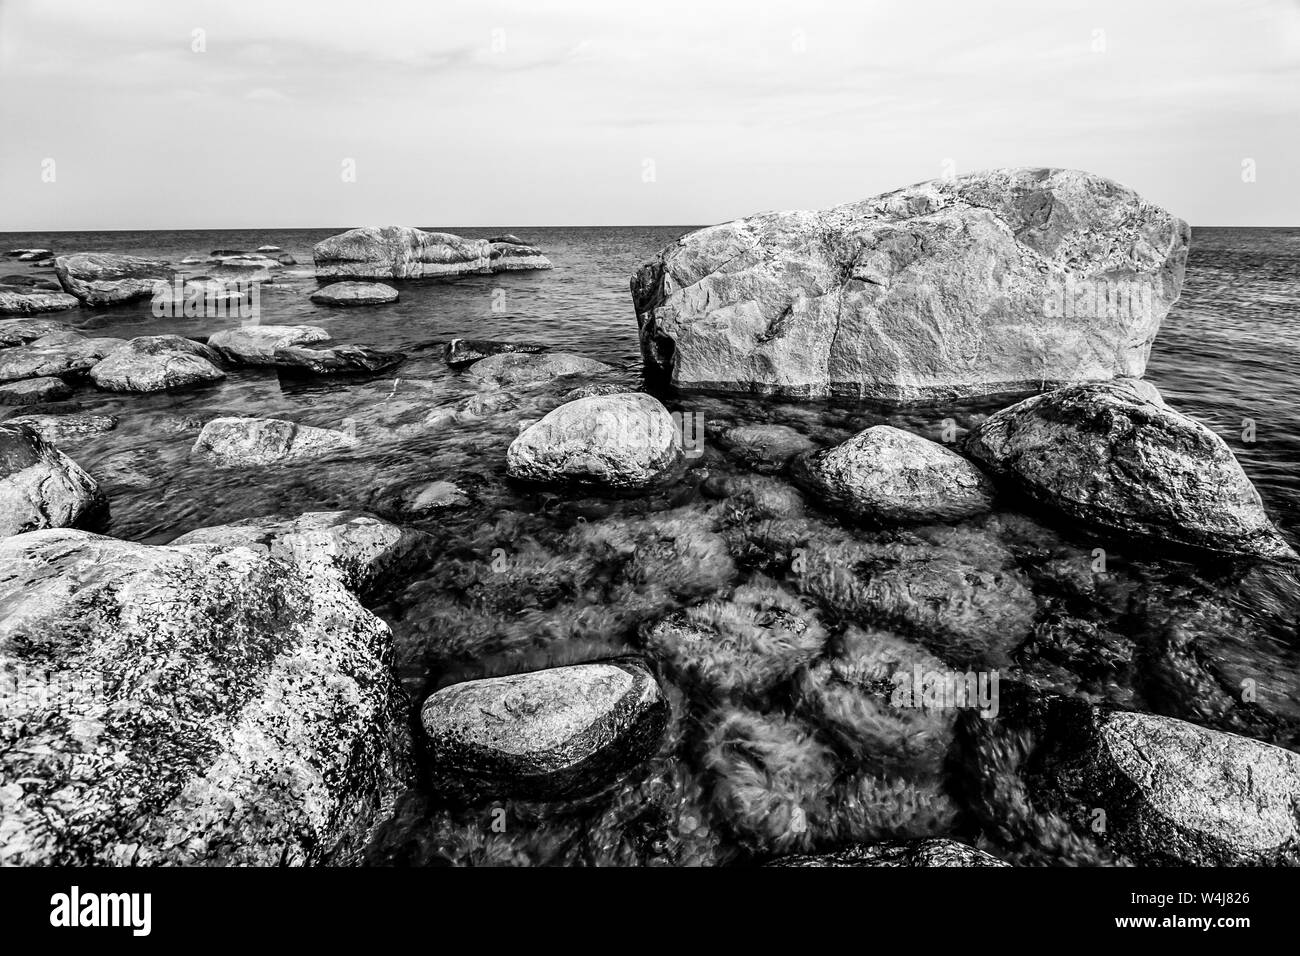 De belles grosses pierres dans la mer avec de petites pierres sous l'eau envahie par les algues vertes dans le golfe de Finlande. En noir et blanc. Banque D'Images